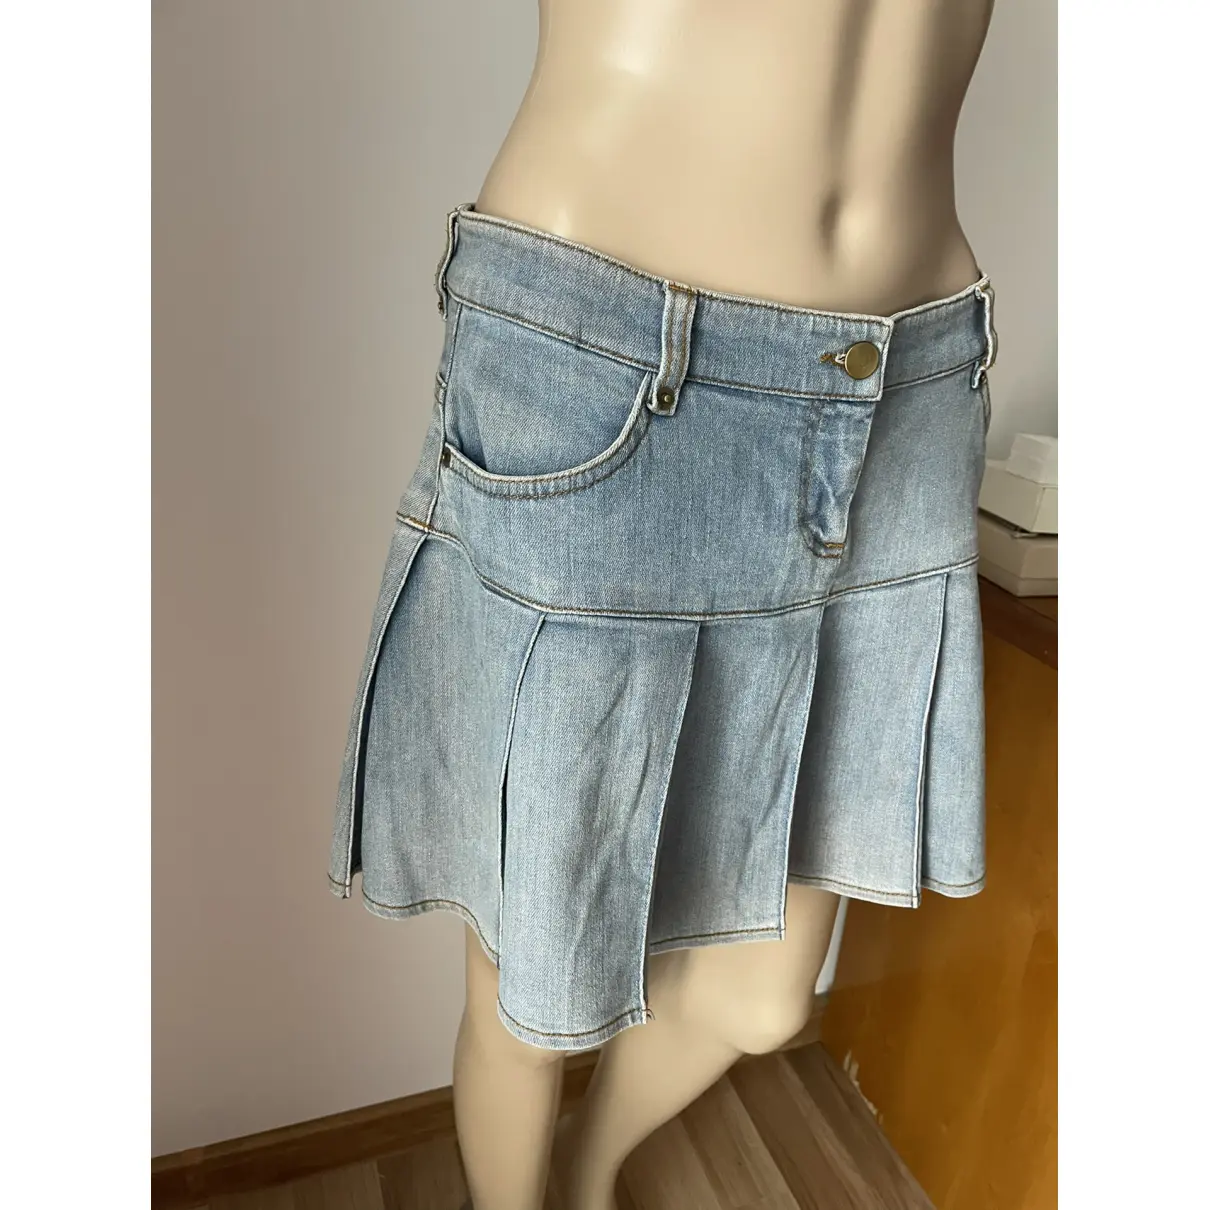 Buy Max & Co Mini skirt online